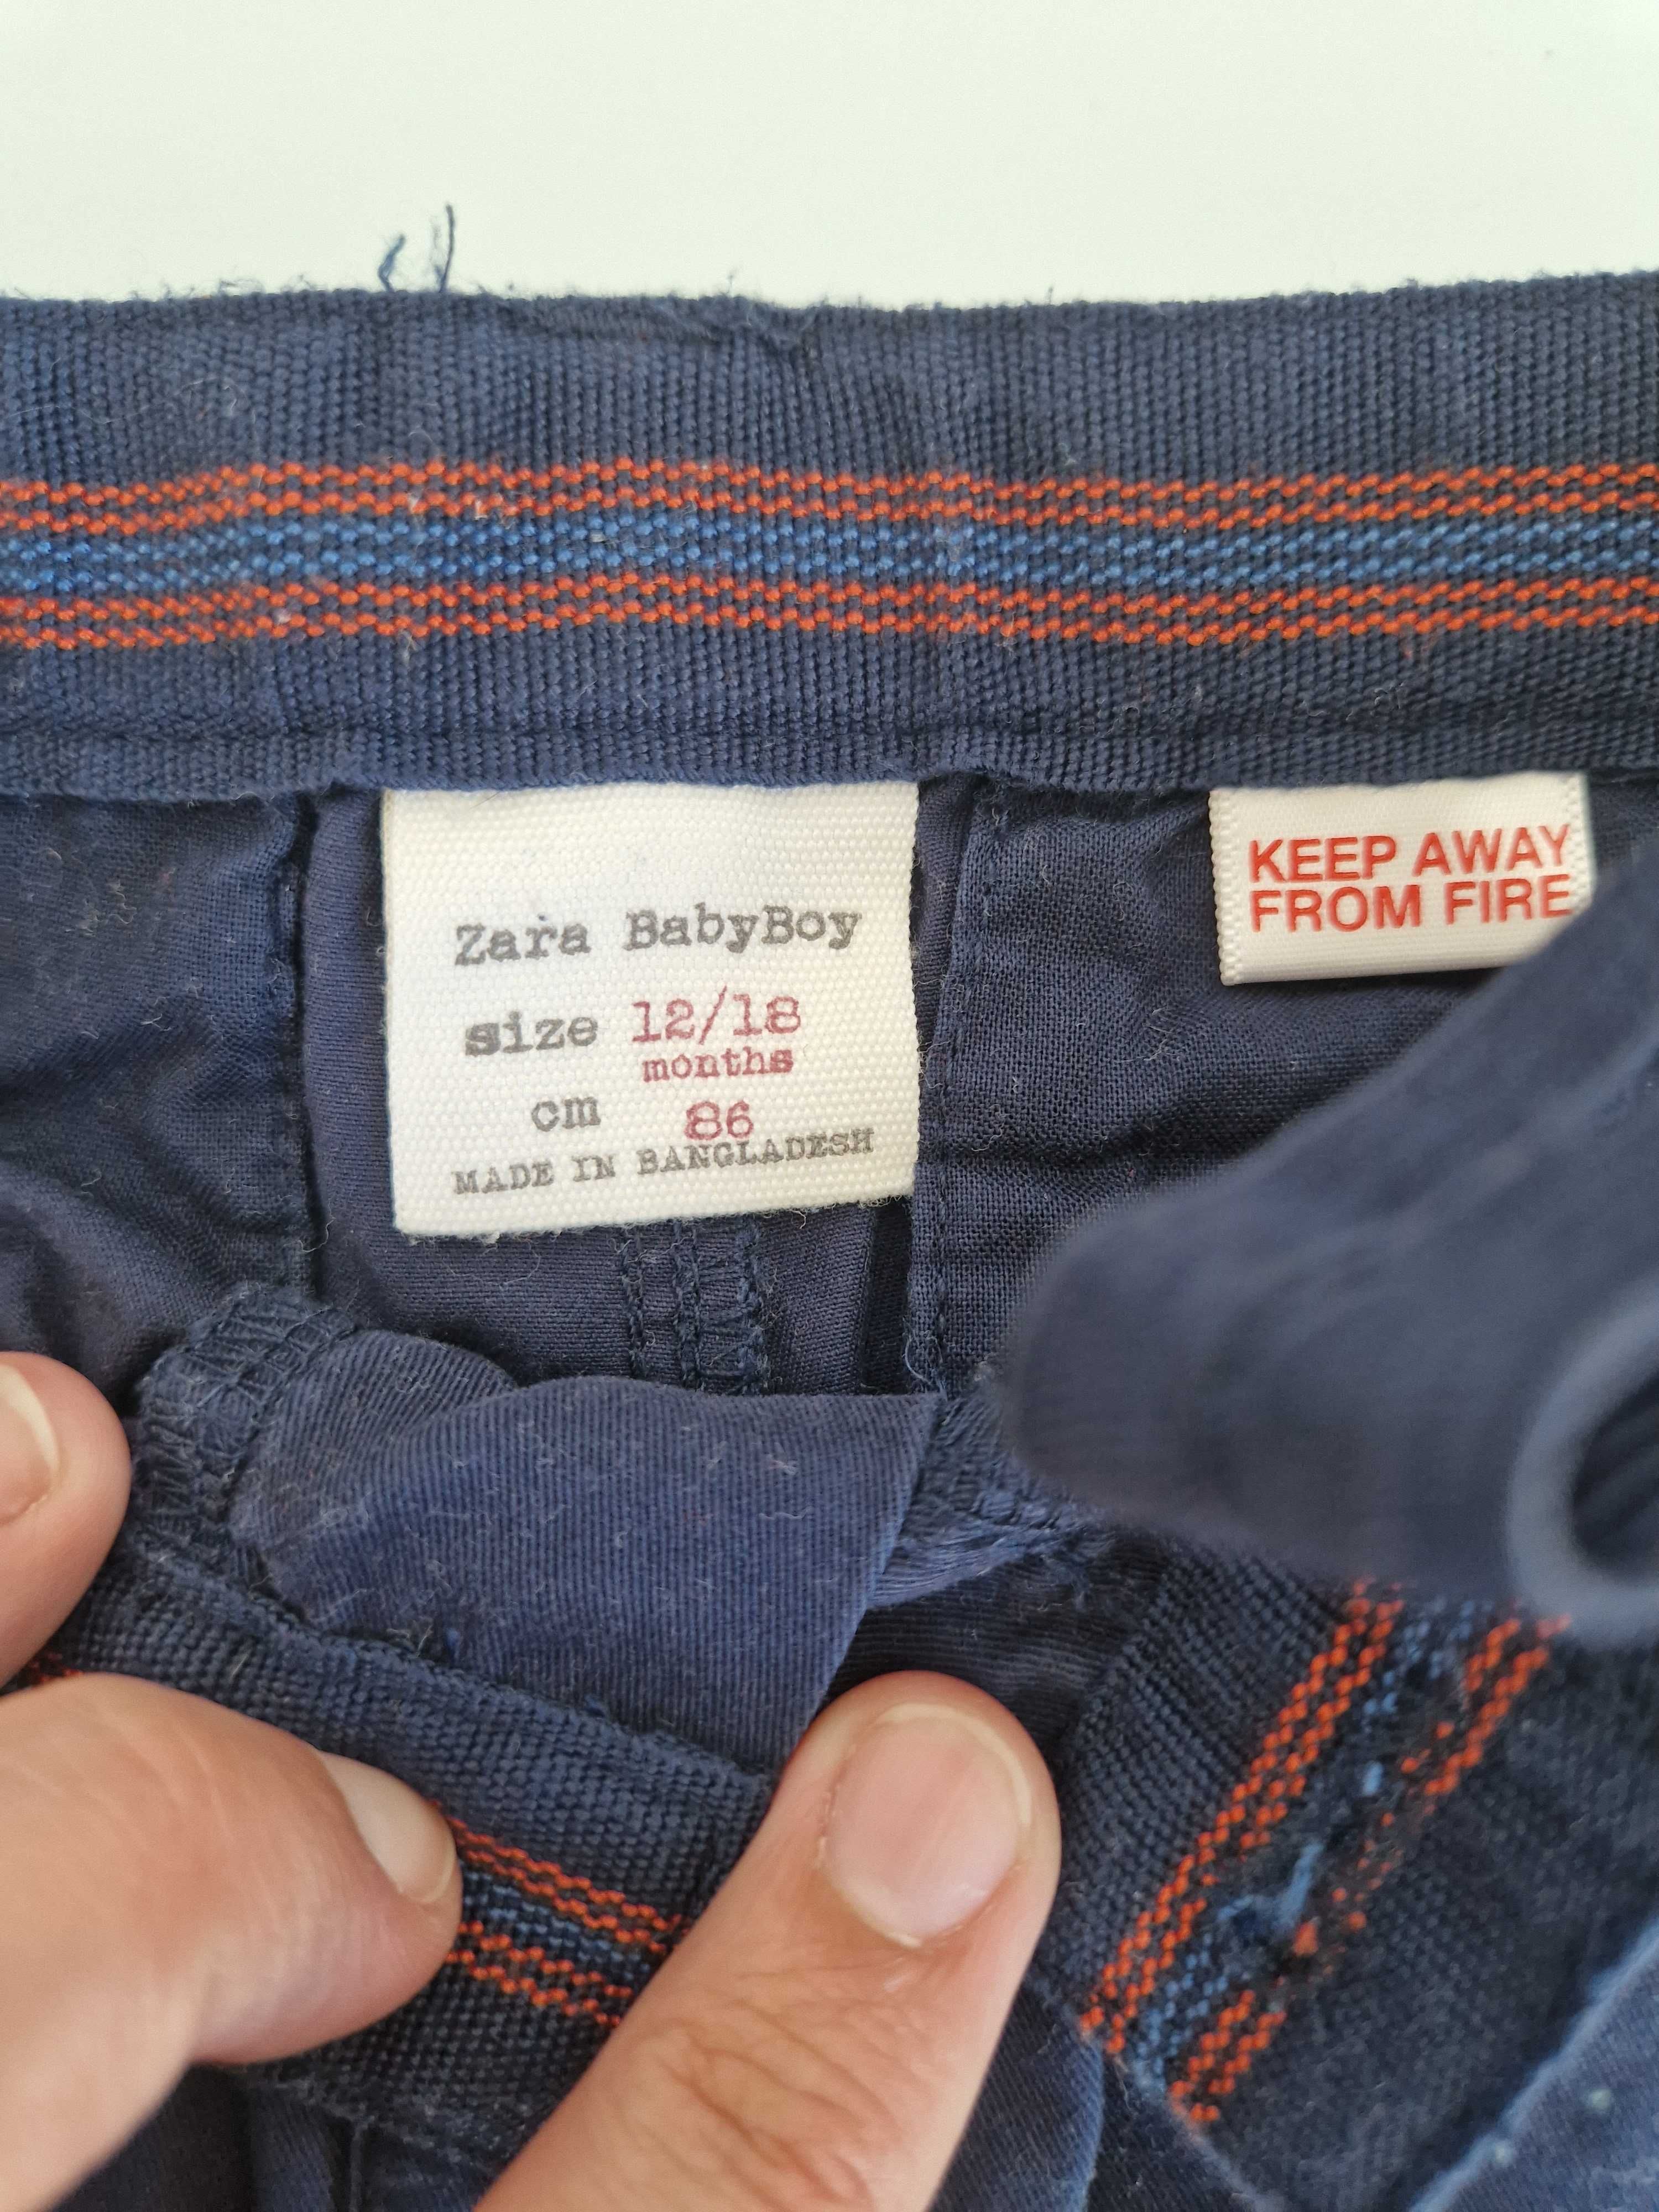 Pantaloni baieti marimea 86 (3 bucati) Zara, H&M